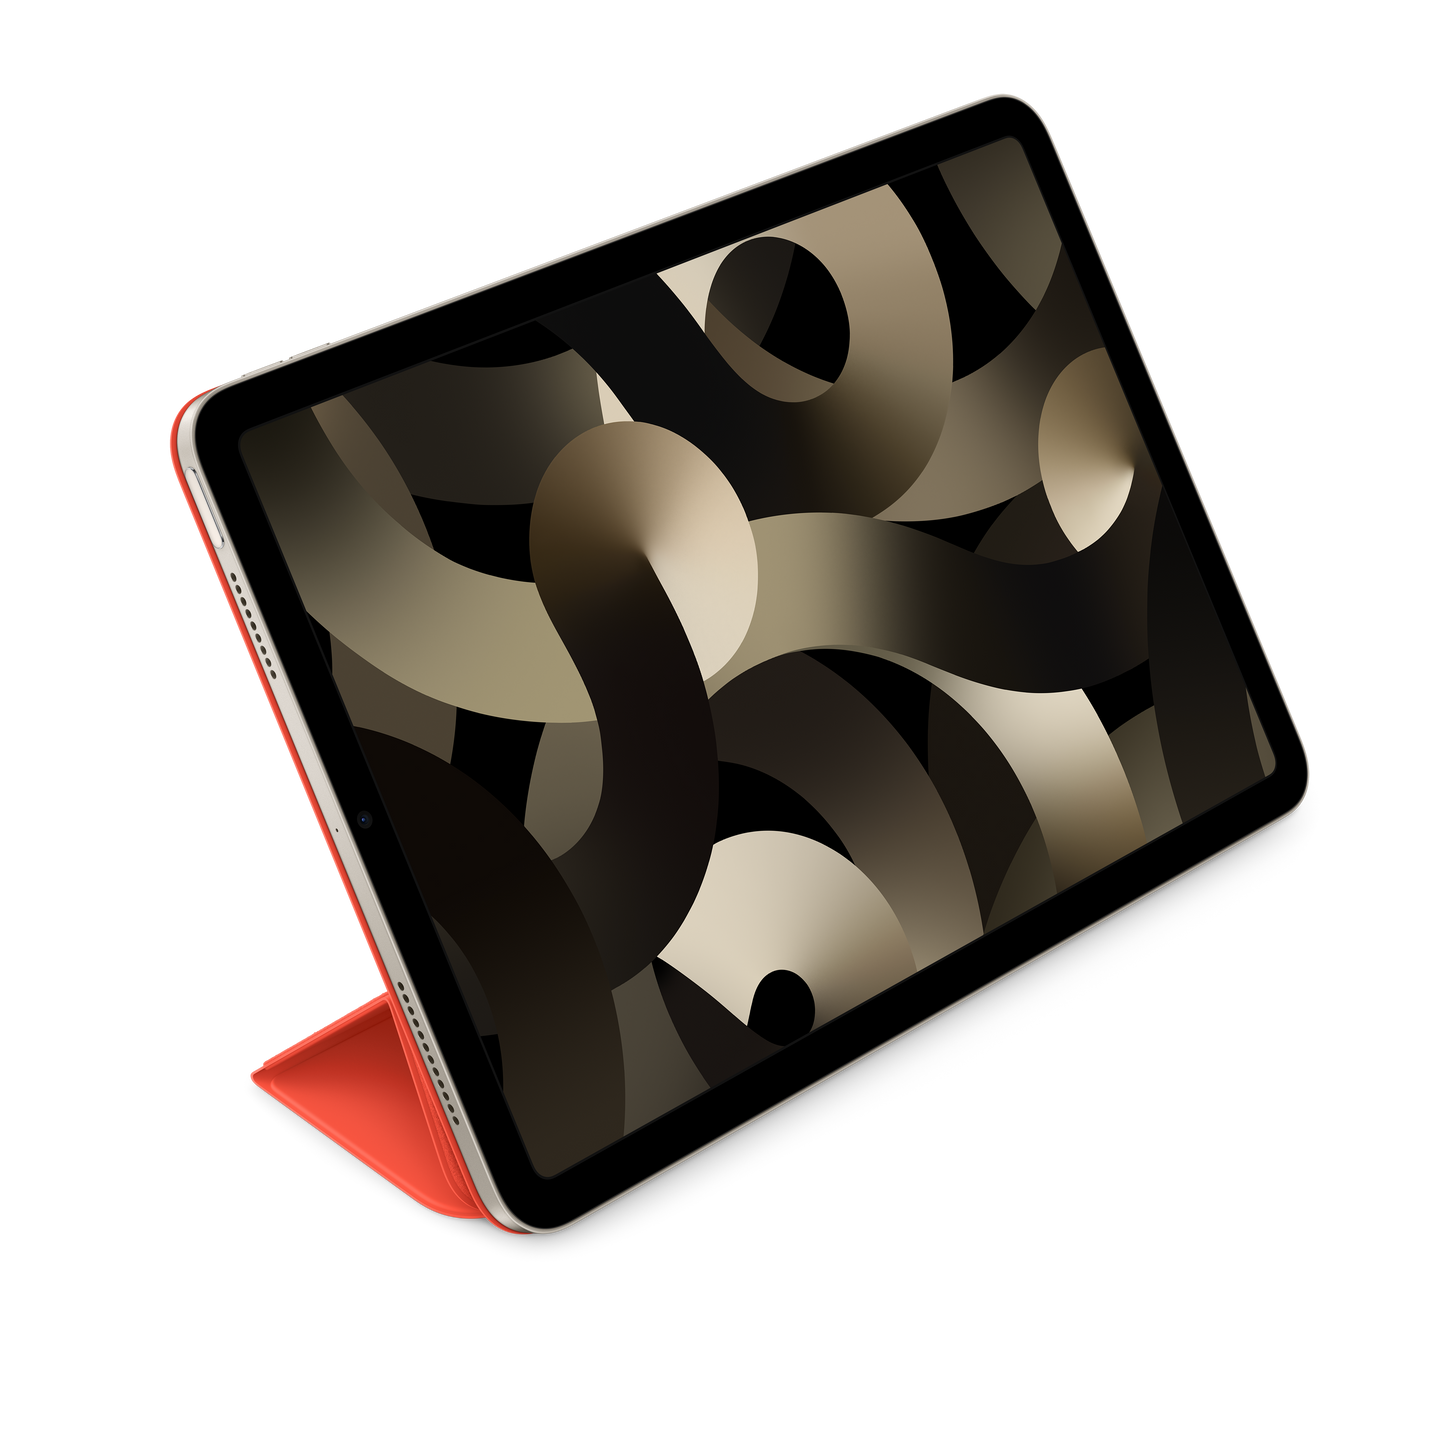 Case Smart Folio Para iPad Air (5.ª generación)